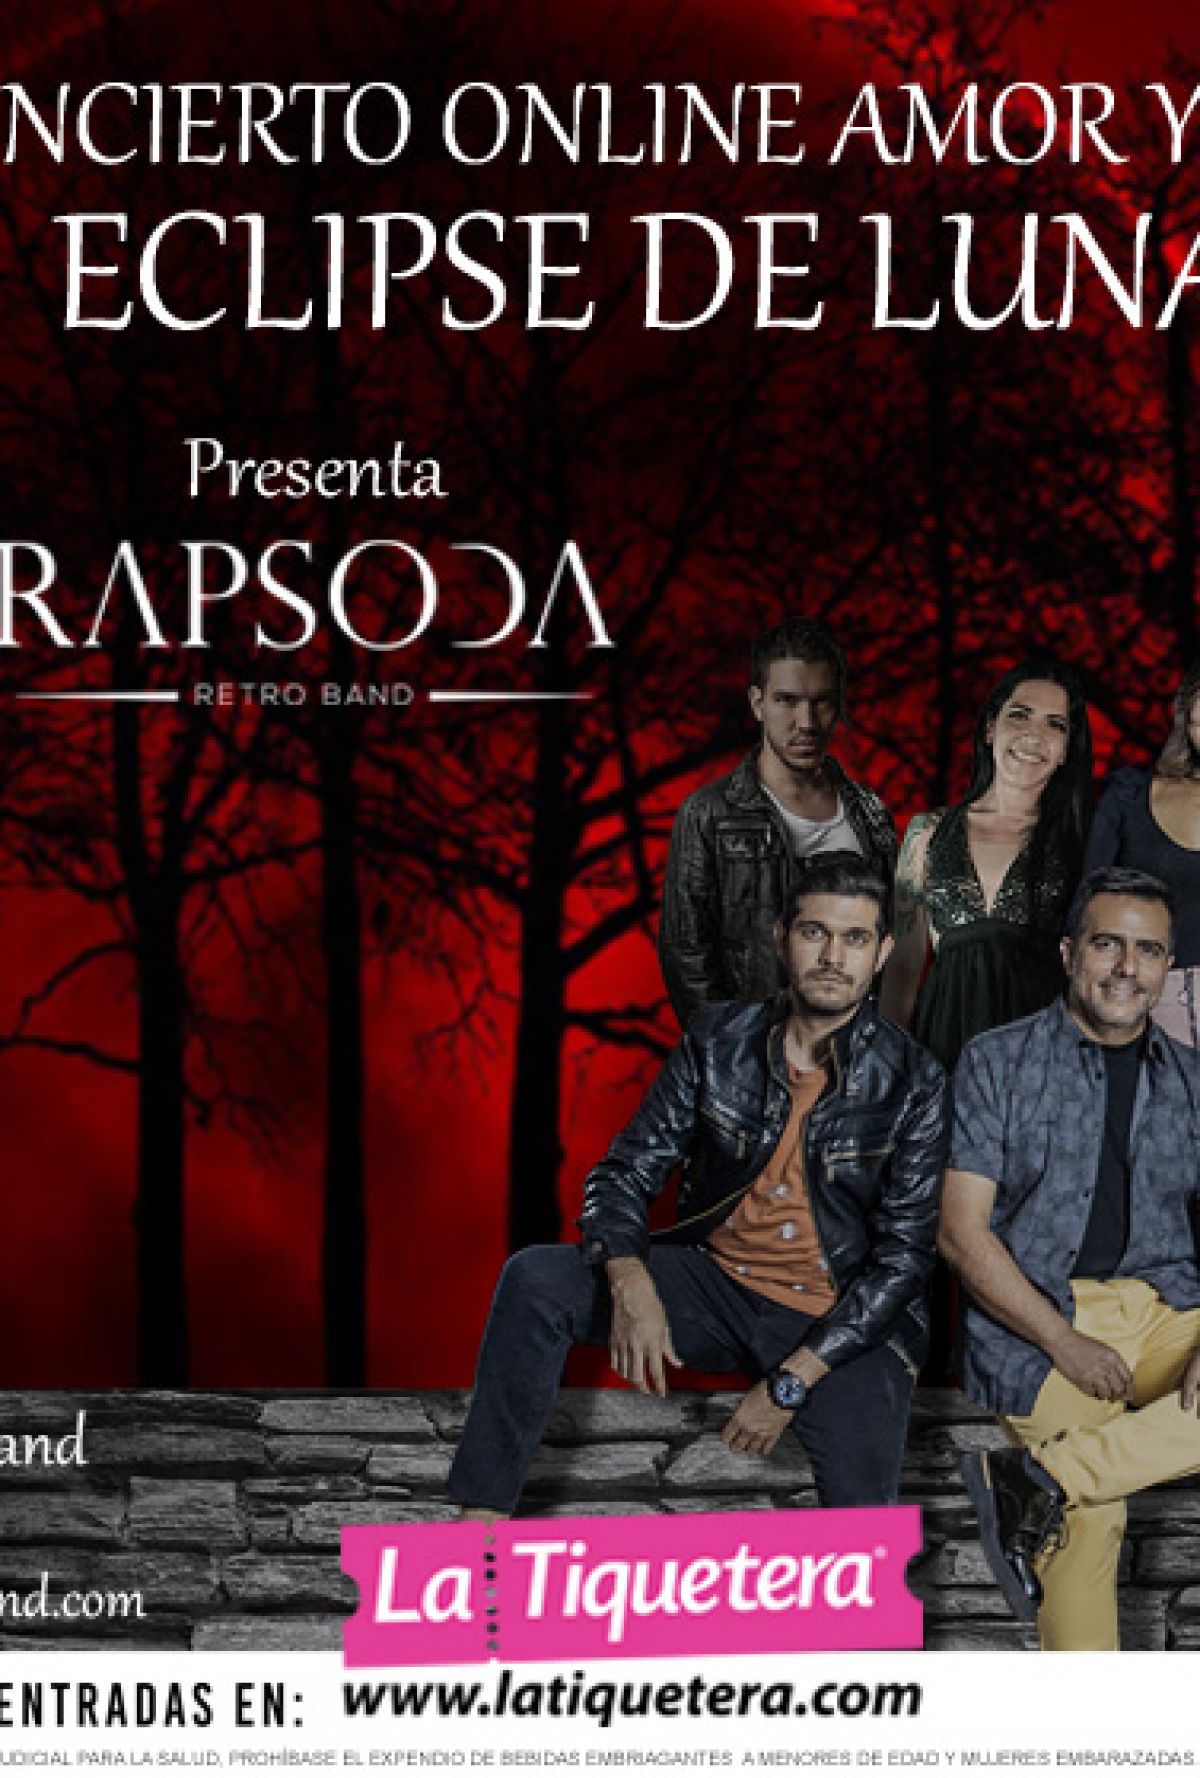 Concierto Amor y Amistad "Eclipse de Luna" con Rapsoda Retro Band